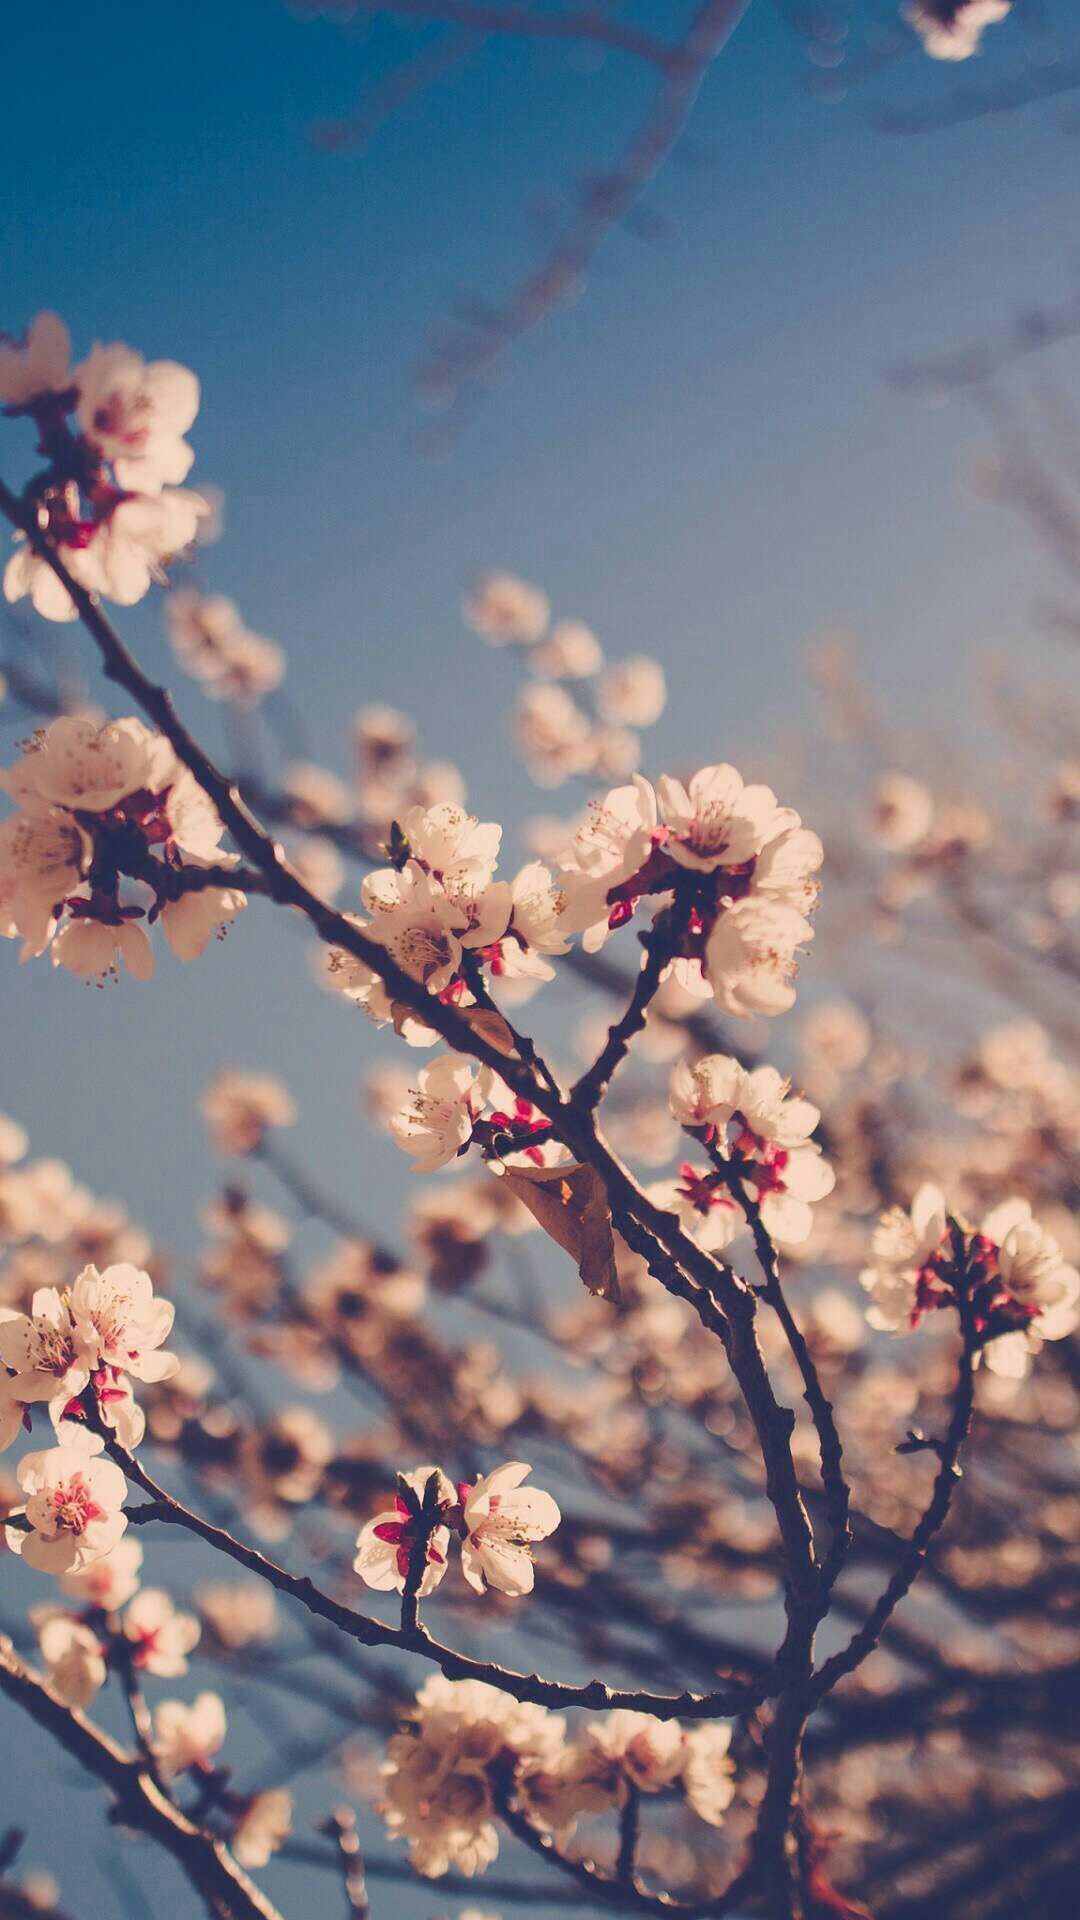 Cherry blossoms. Fotografia de paisagem, Fotografia da natureza